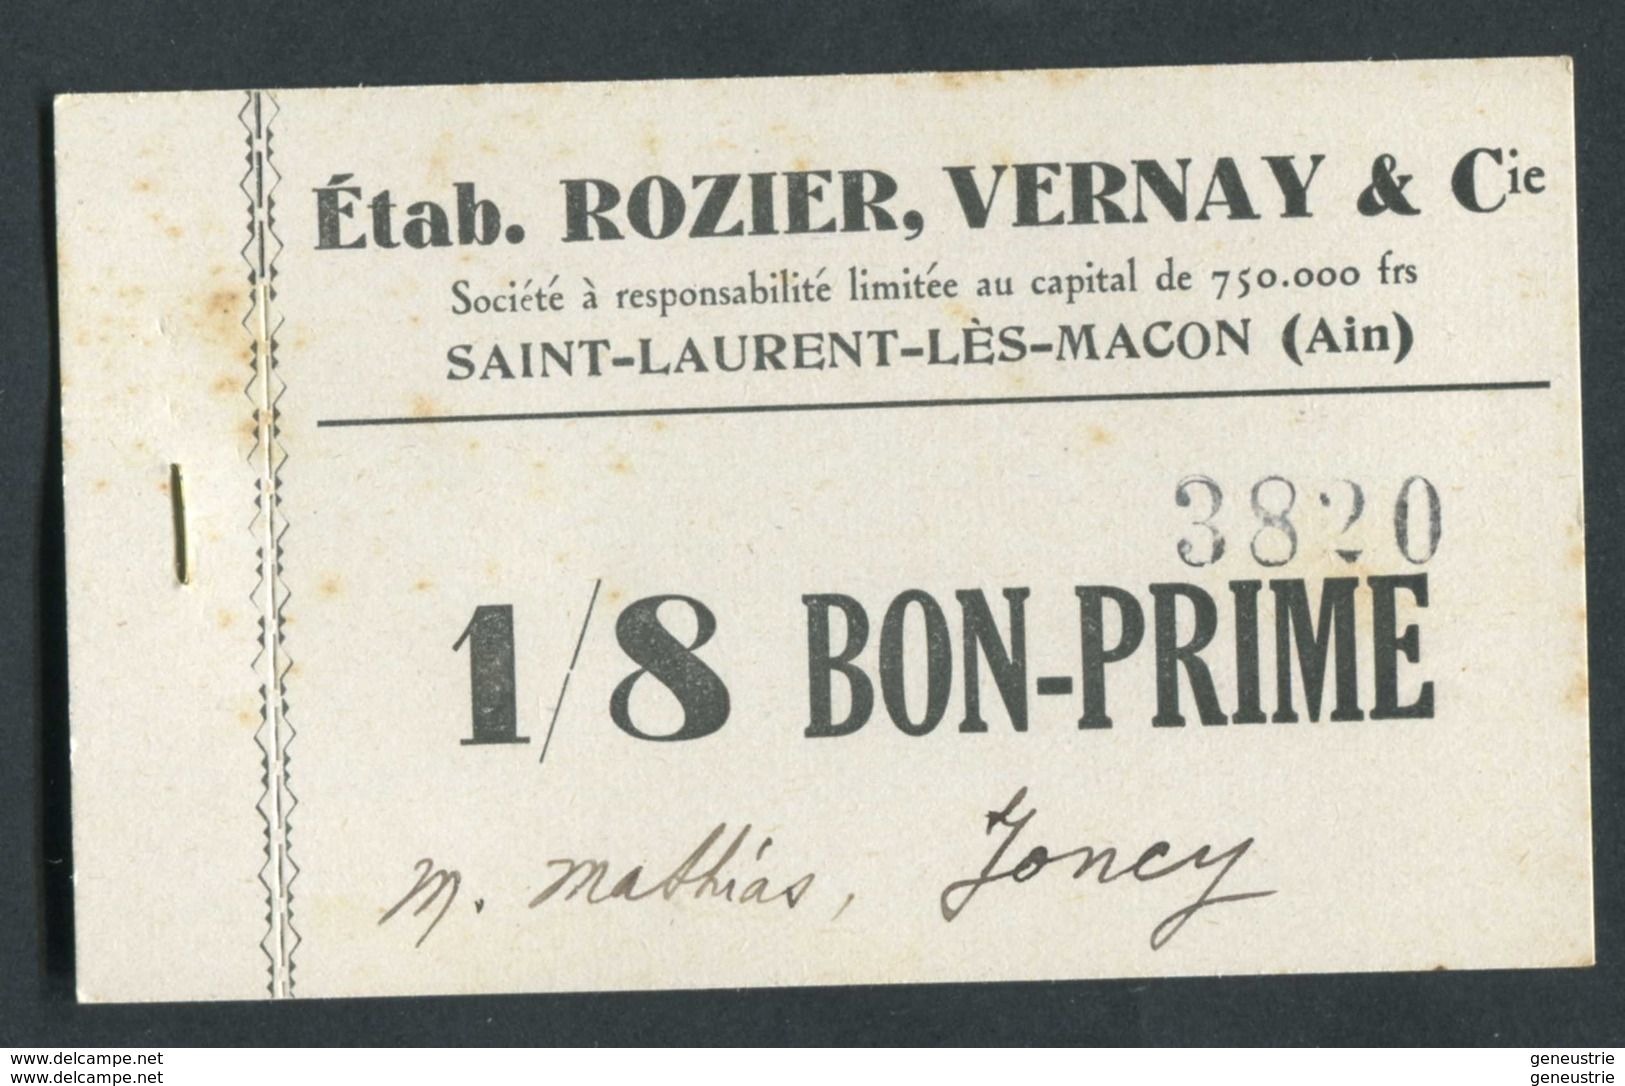 Monnaie De Nécessité Carton "1/8 Bon-Prime - Ets Rozier, Vernay & Cie - St Laurent-les-Macon (Ain)" Emergency Banknote - Monetary / Of Necessity